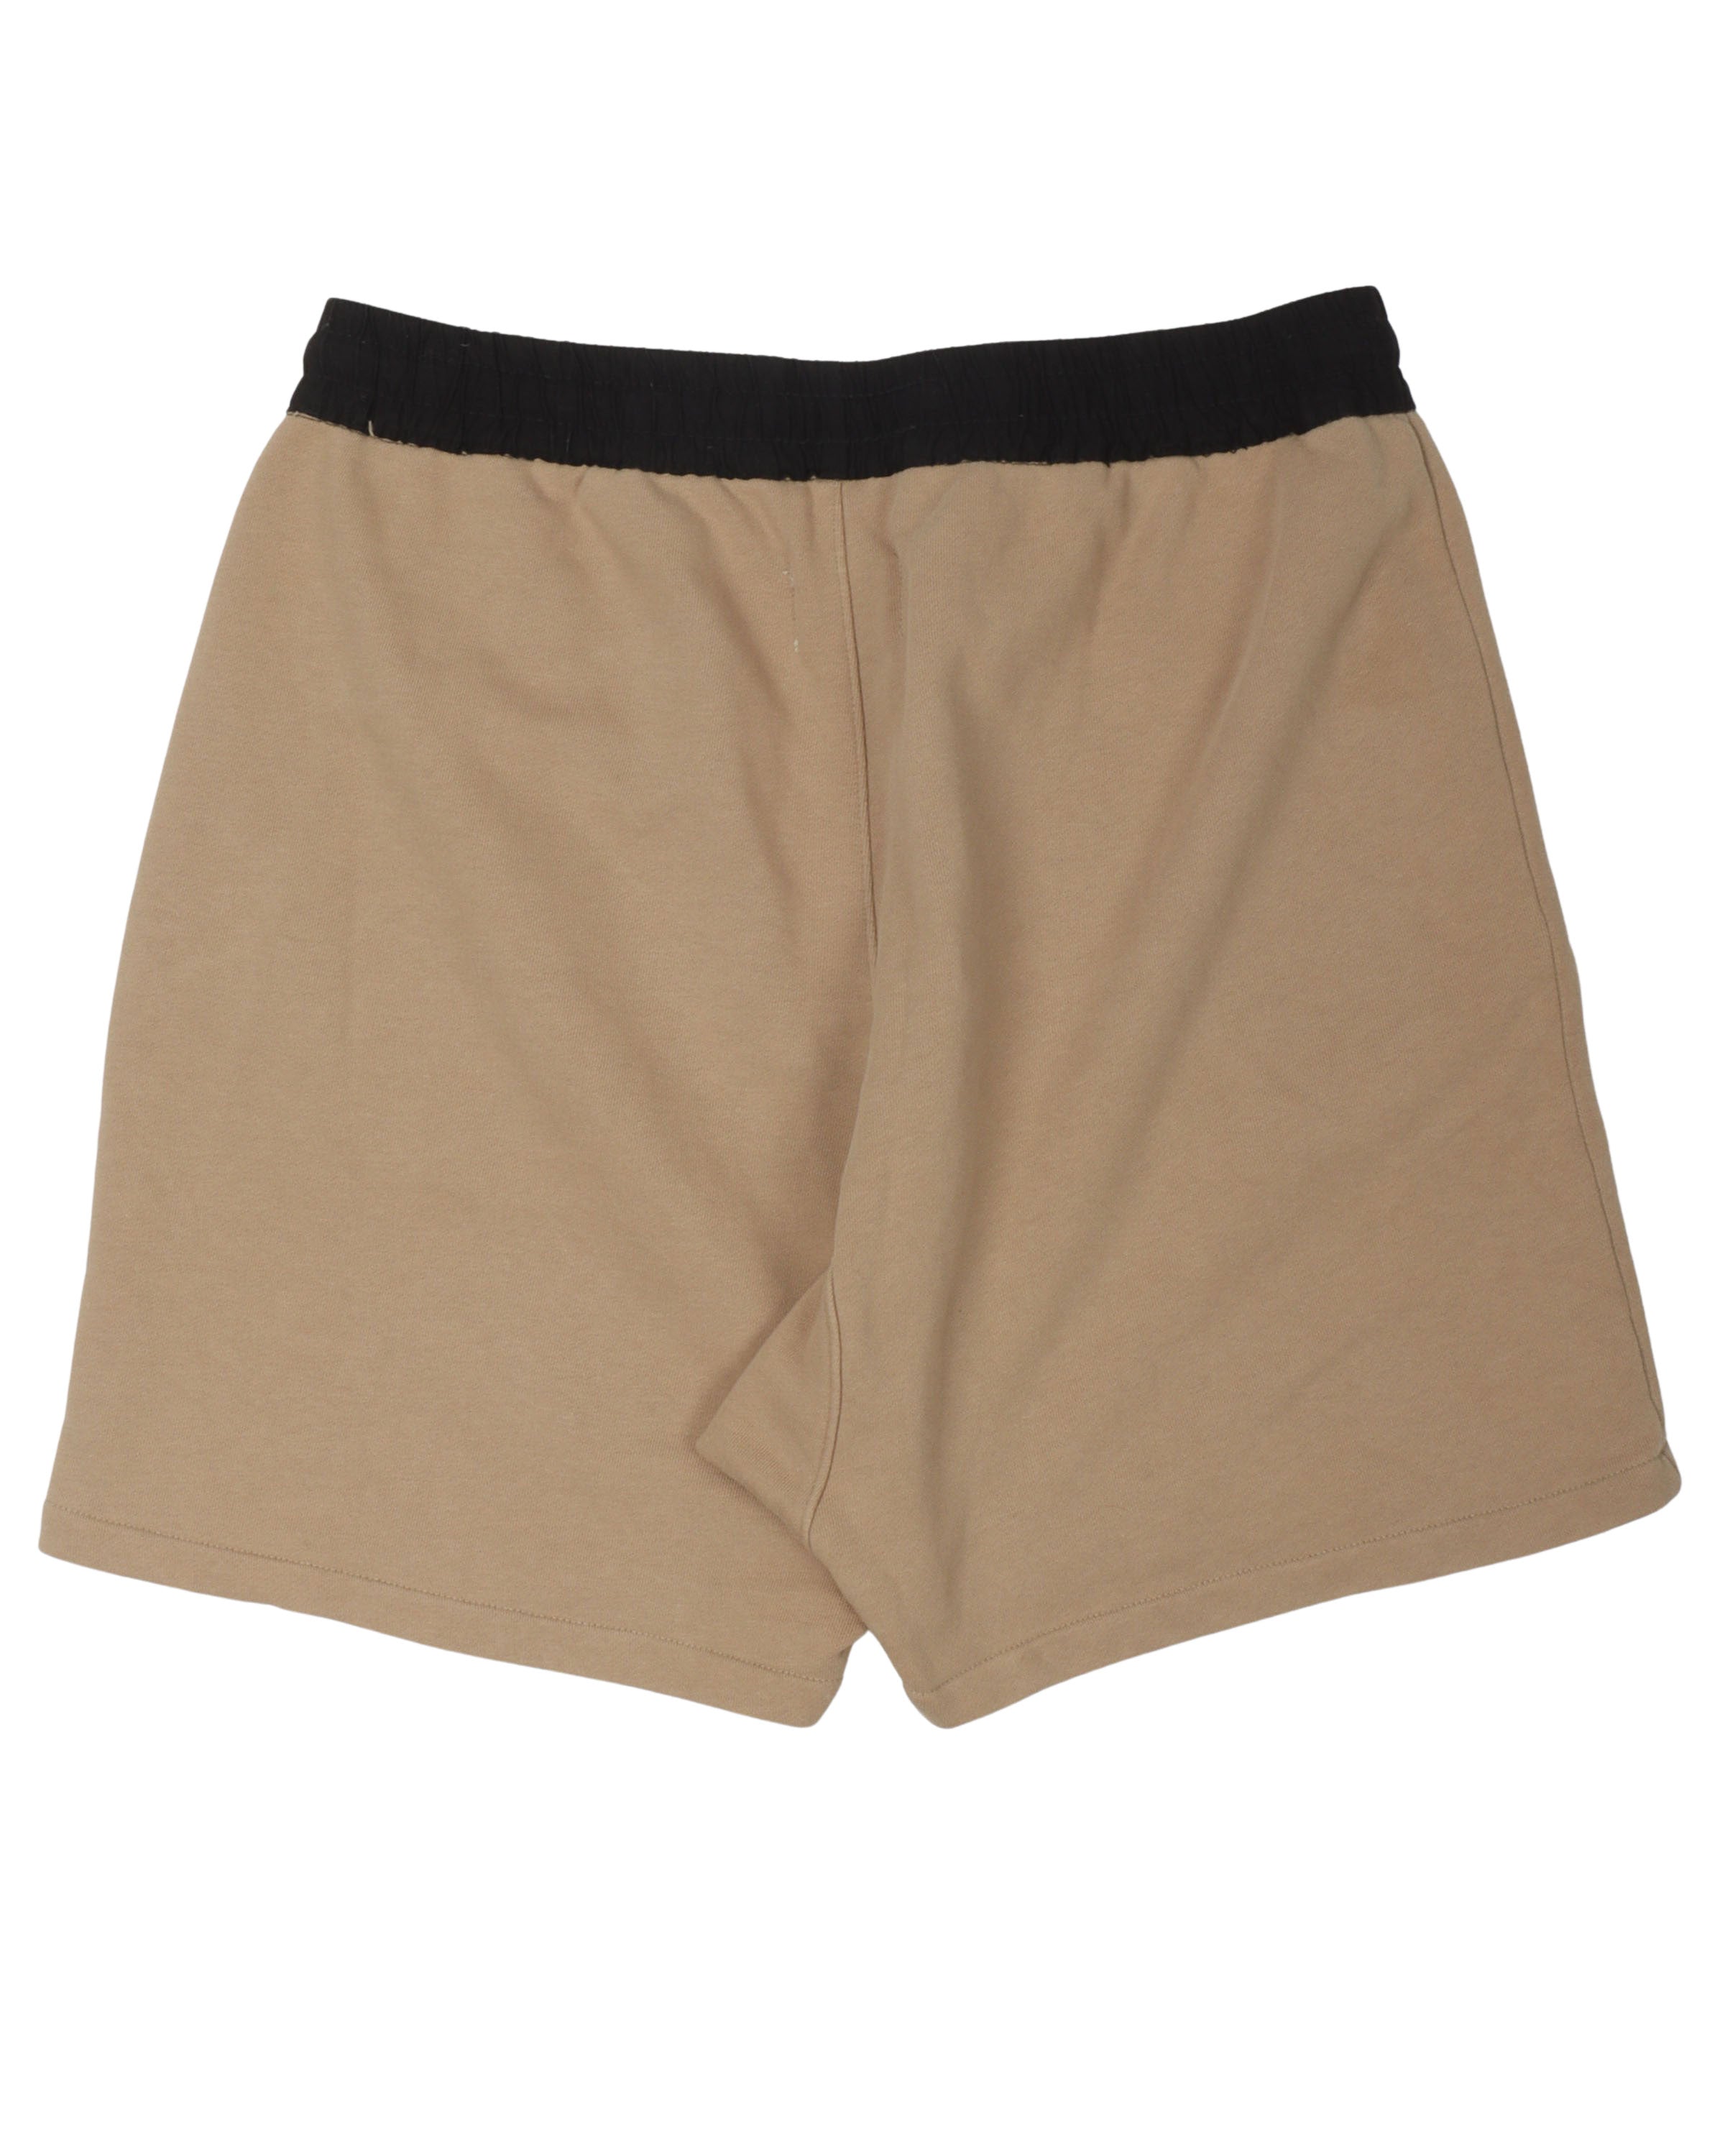 Essentials Tan Shorts